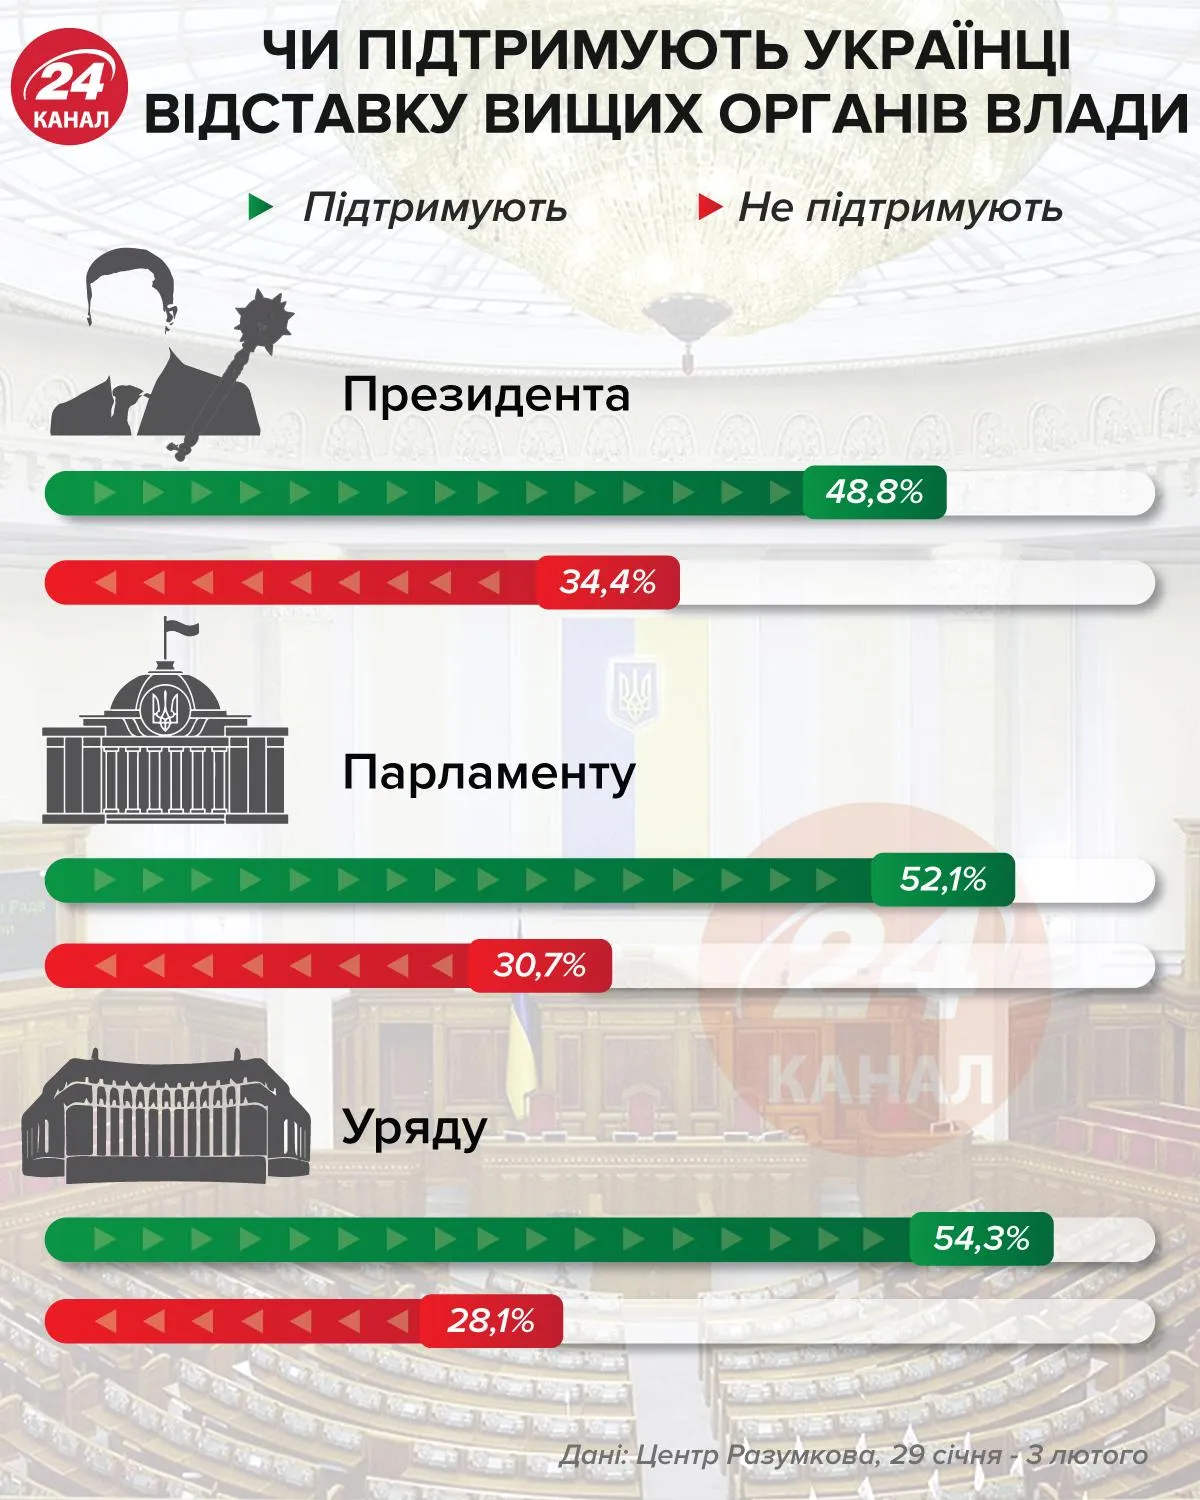 Чи підтримують українці відставку вищих органів влади / Інфографіка 24 каналу